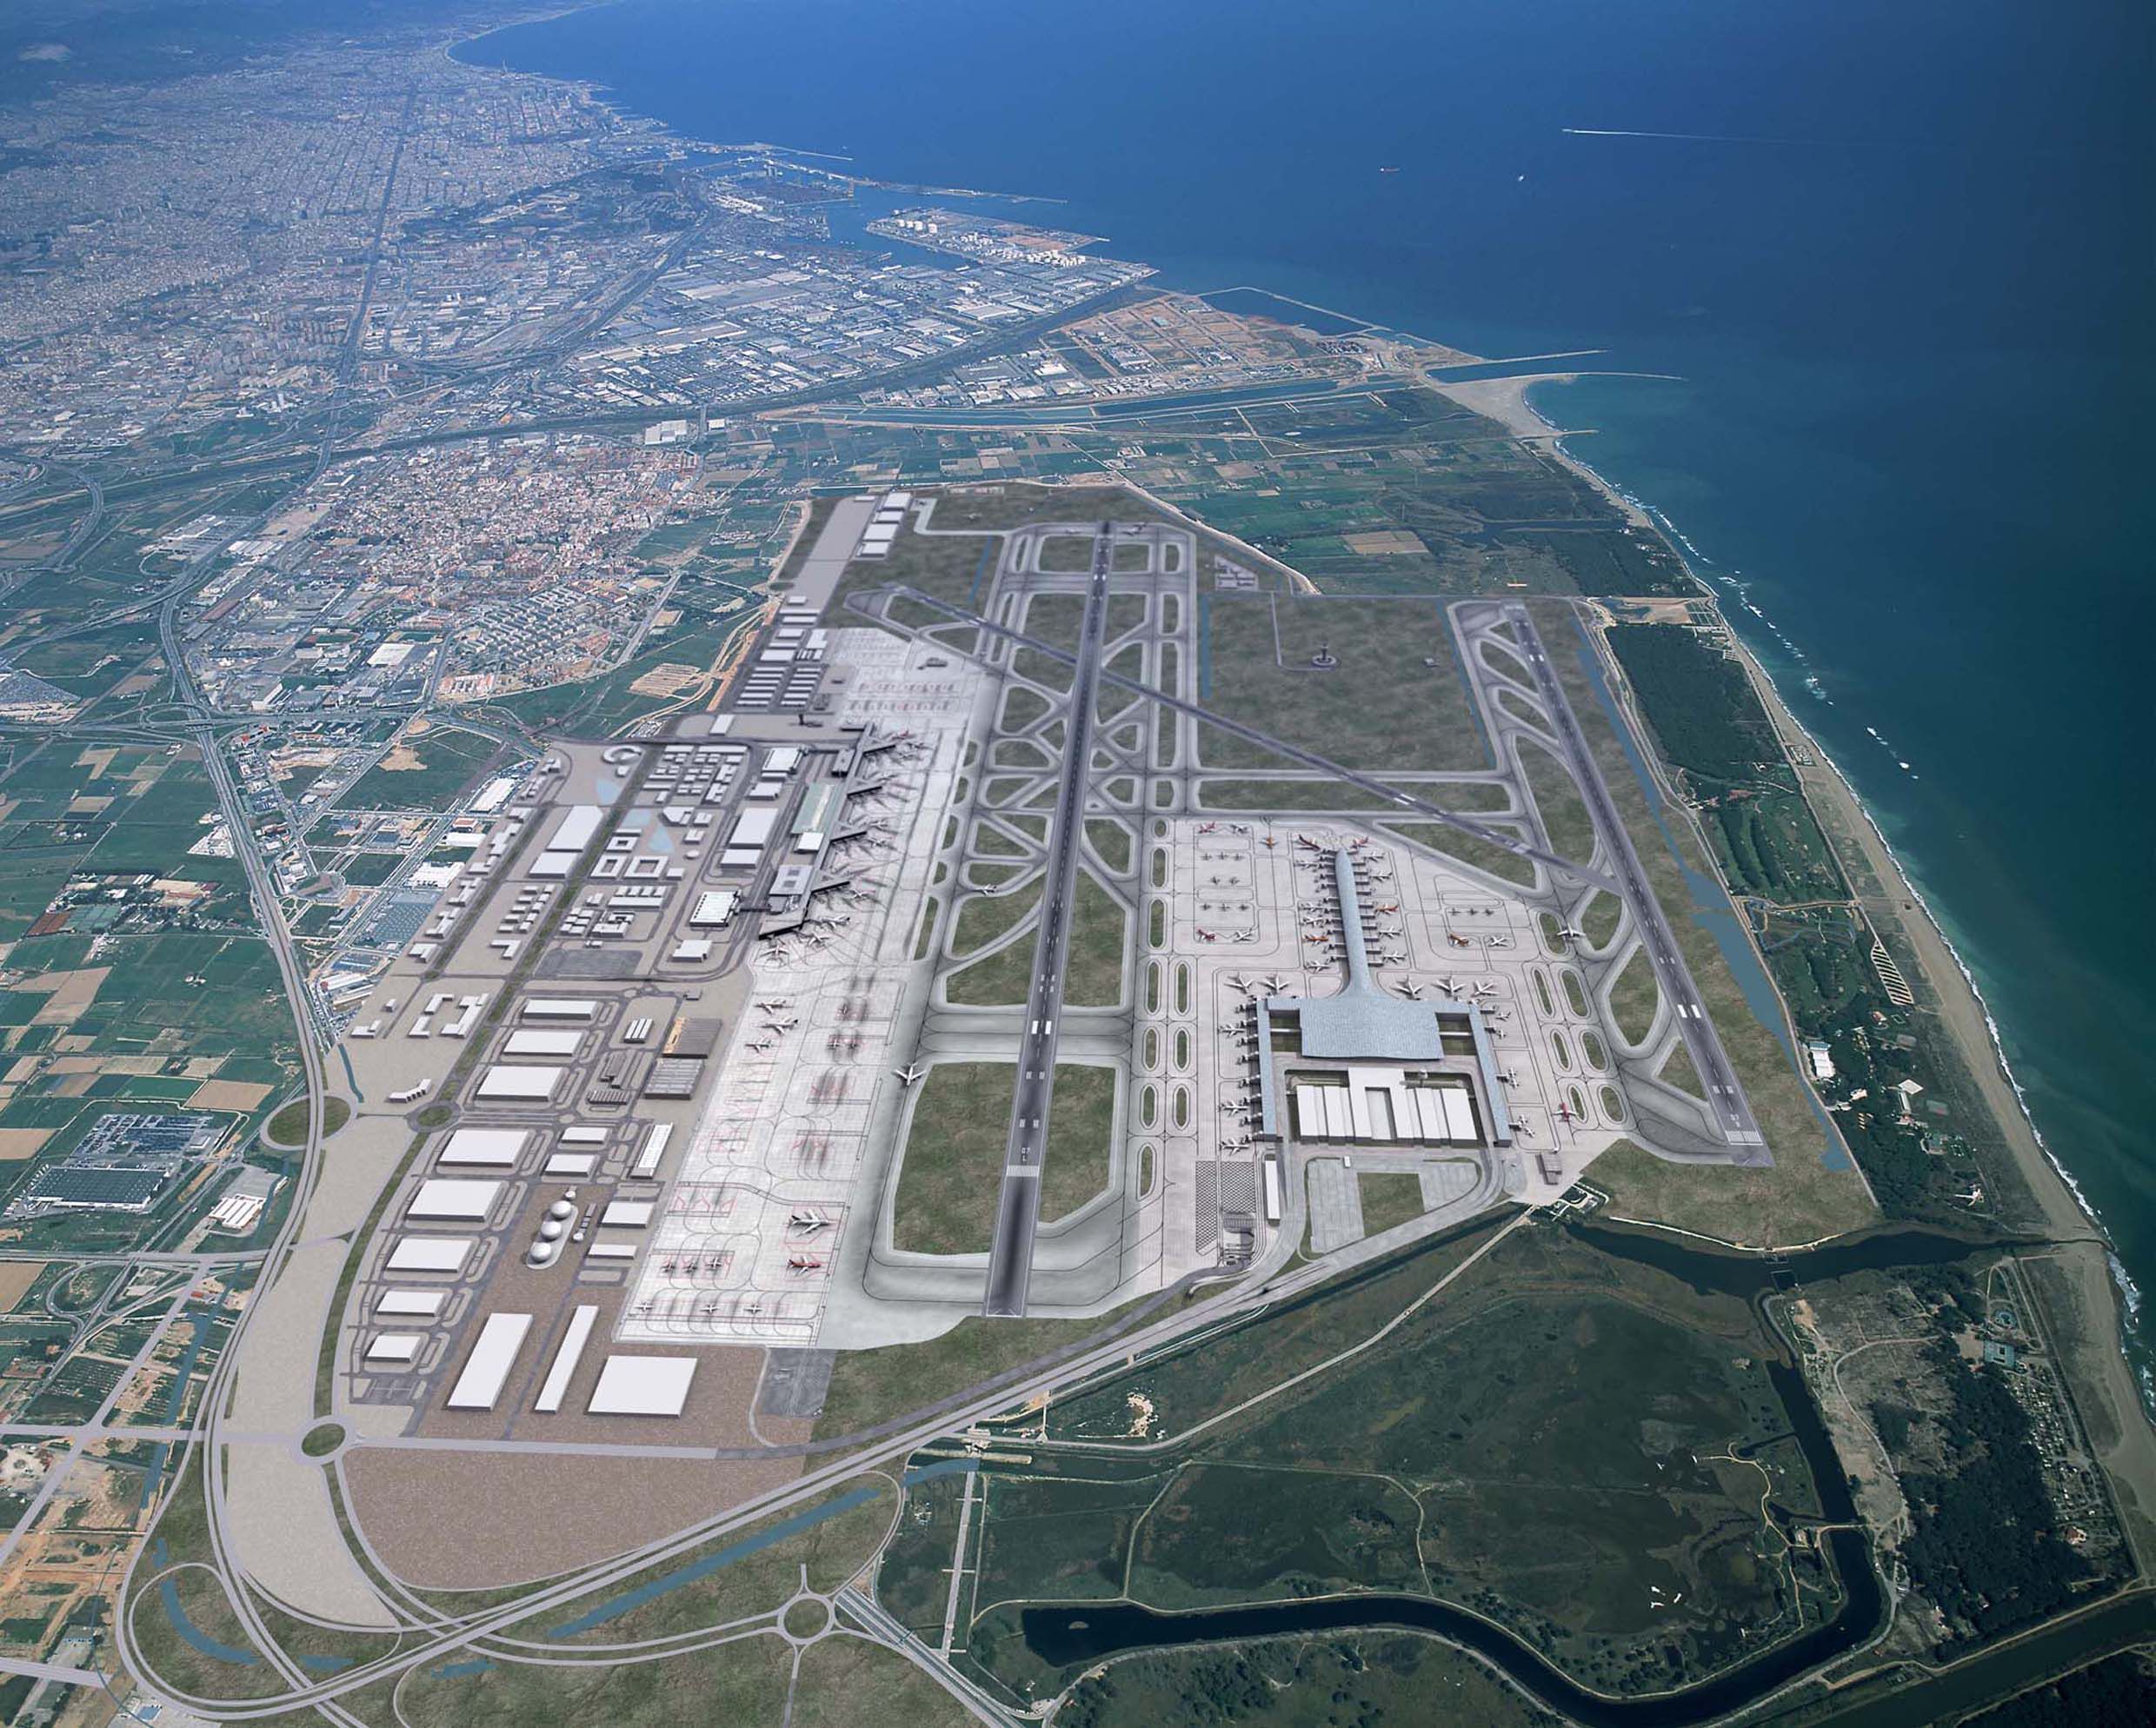 Vista aerea Aeropuerto del Prat